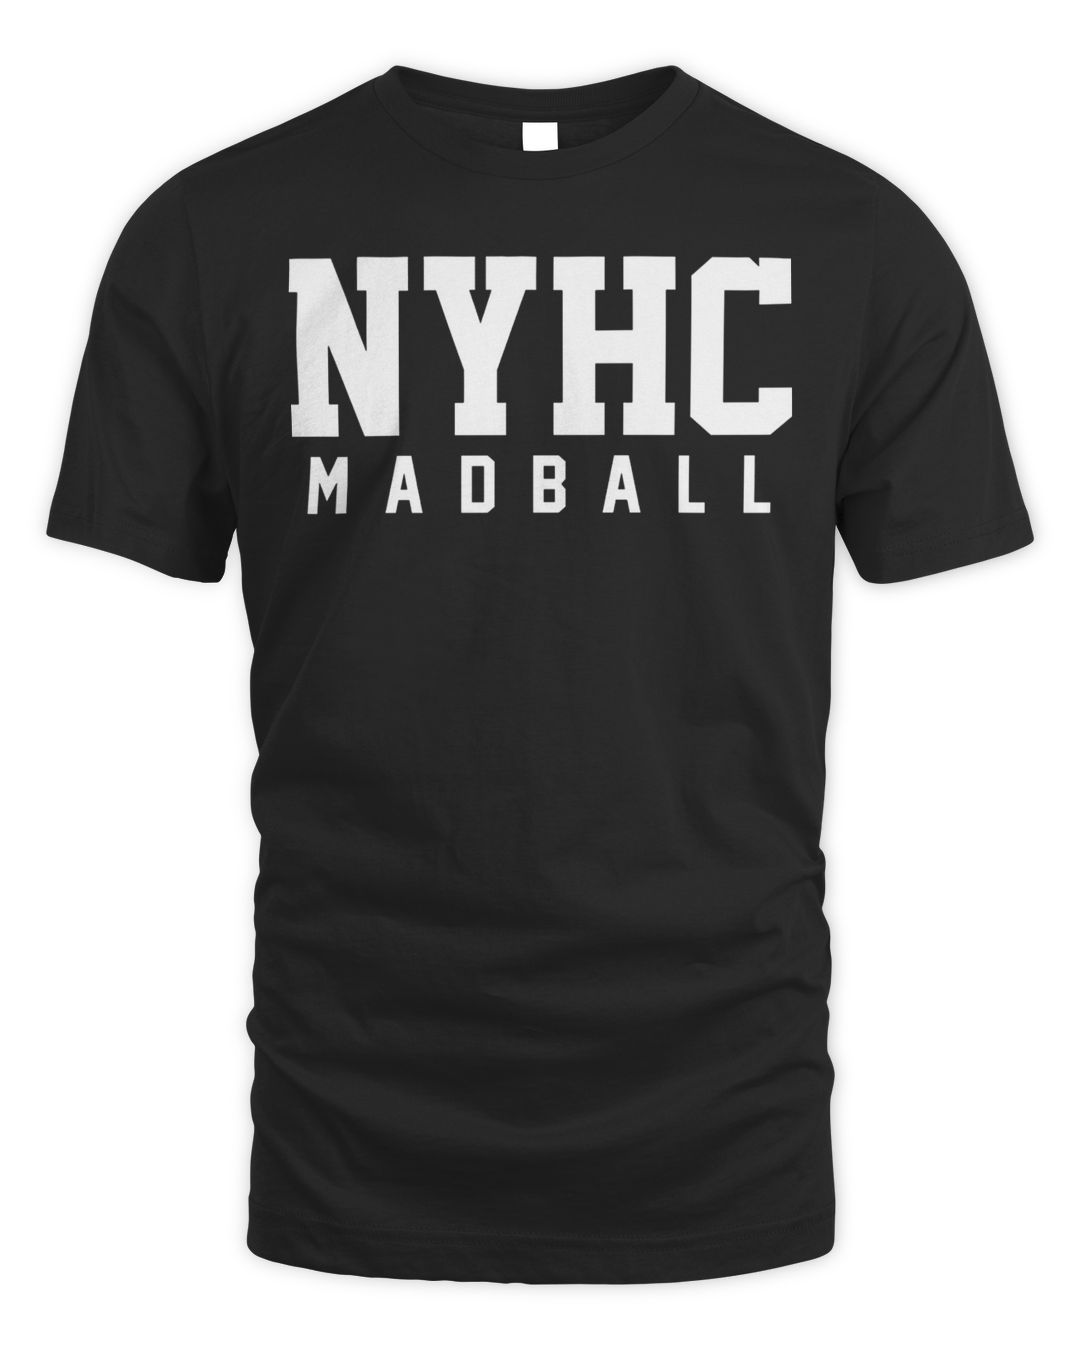 Madball Merch Nyhc Ball Of Destruction Shirt